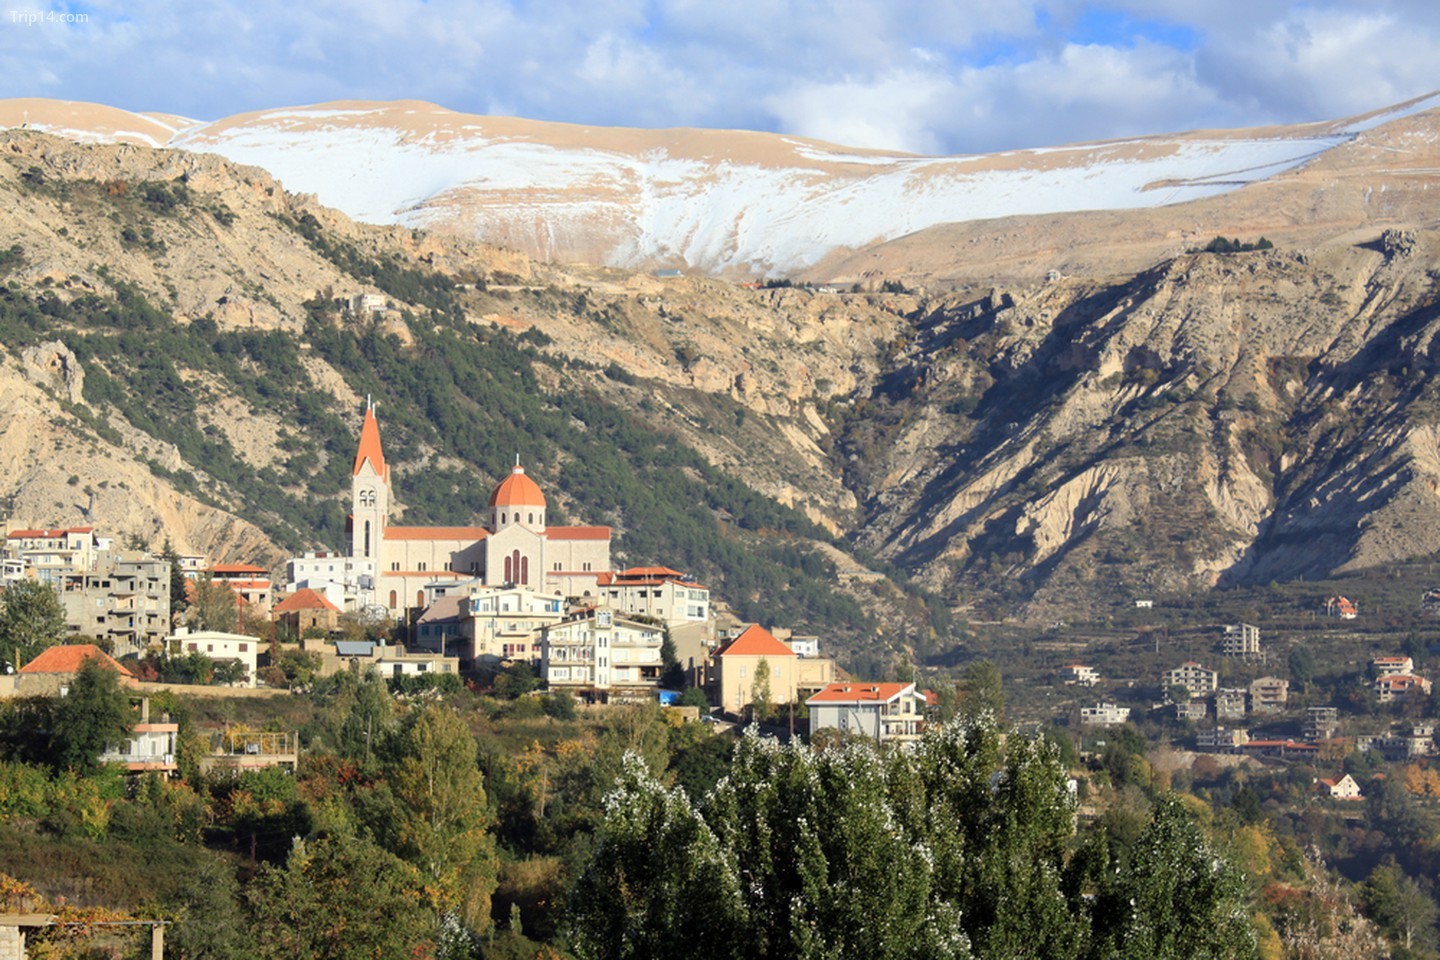 Núi, tuyết và thị trấn Bcharre ở Lebanon